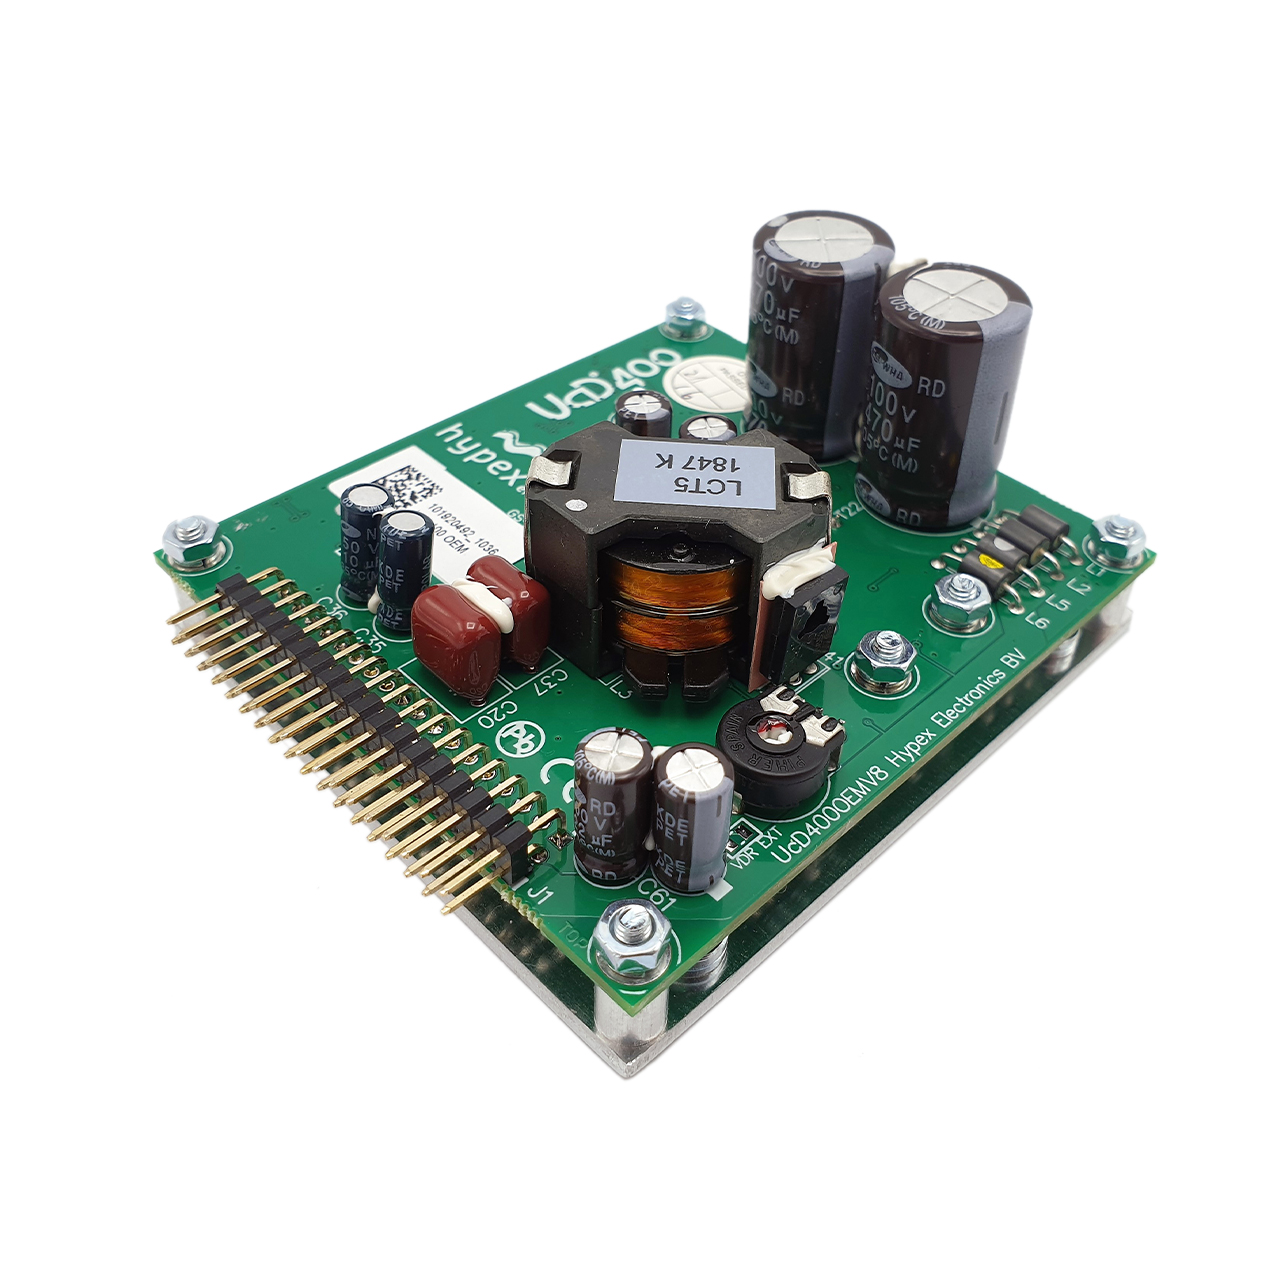 Hypex UcD™ 400 OEM amplifier module